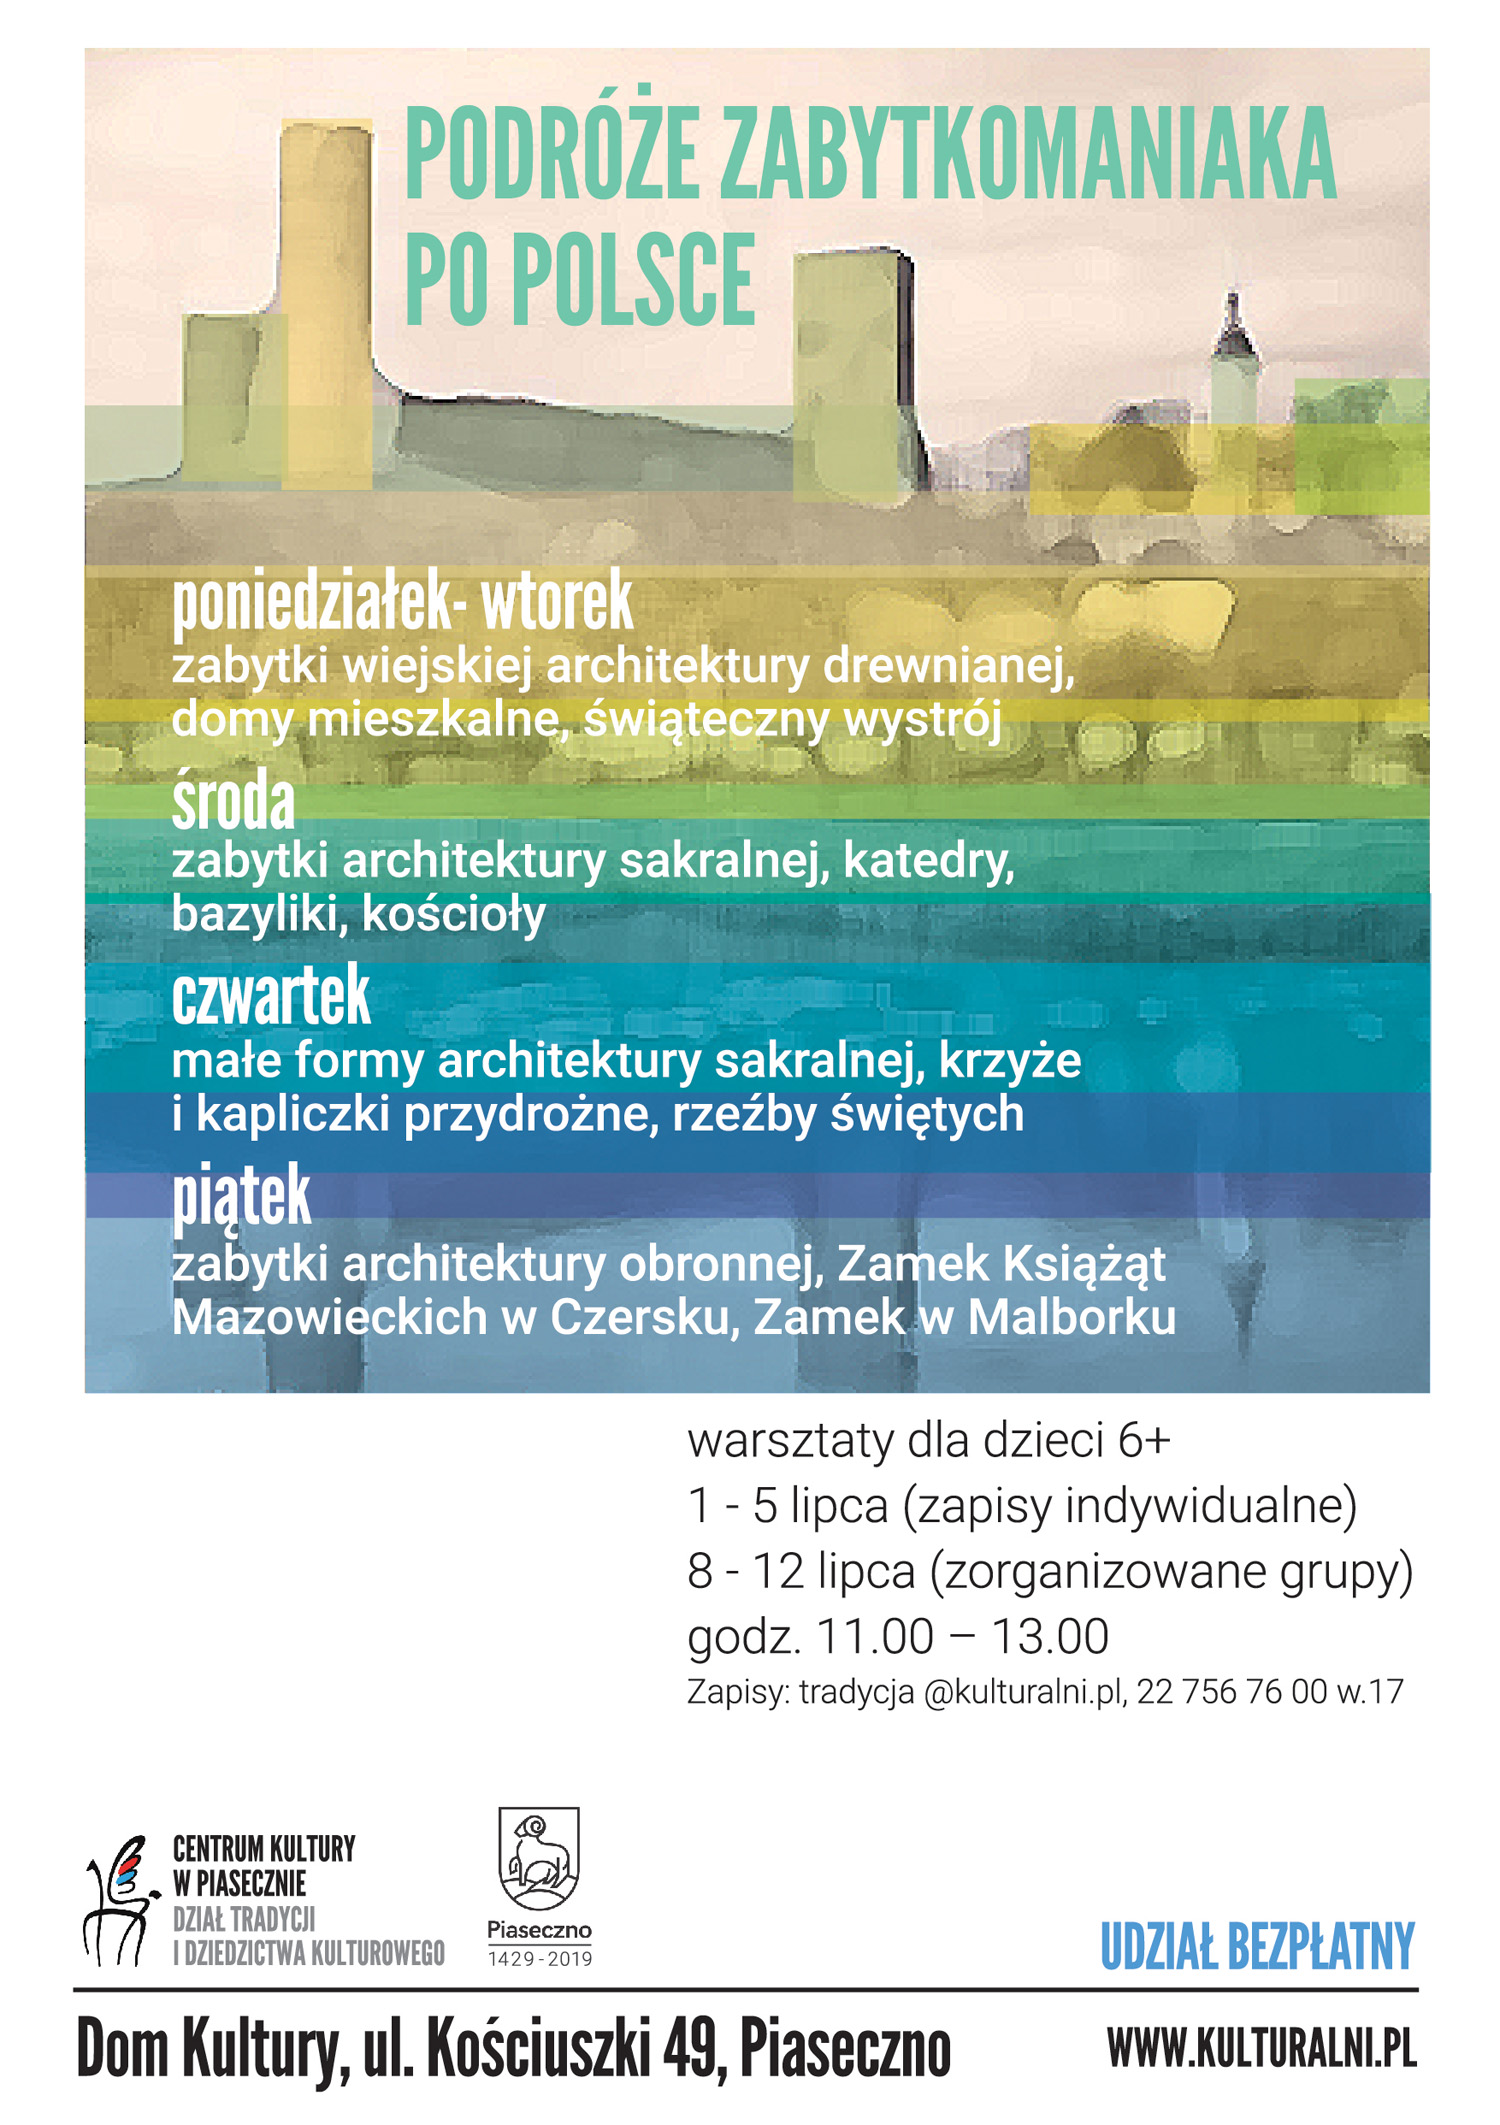 Podróże zabytkomaniaka po Polsce - warsztaty dla dzieci w Piasecznie